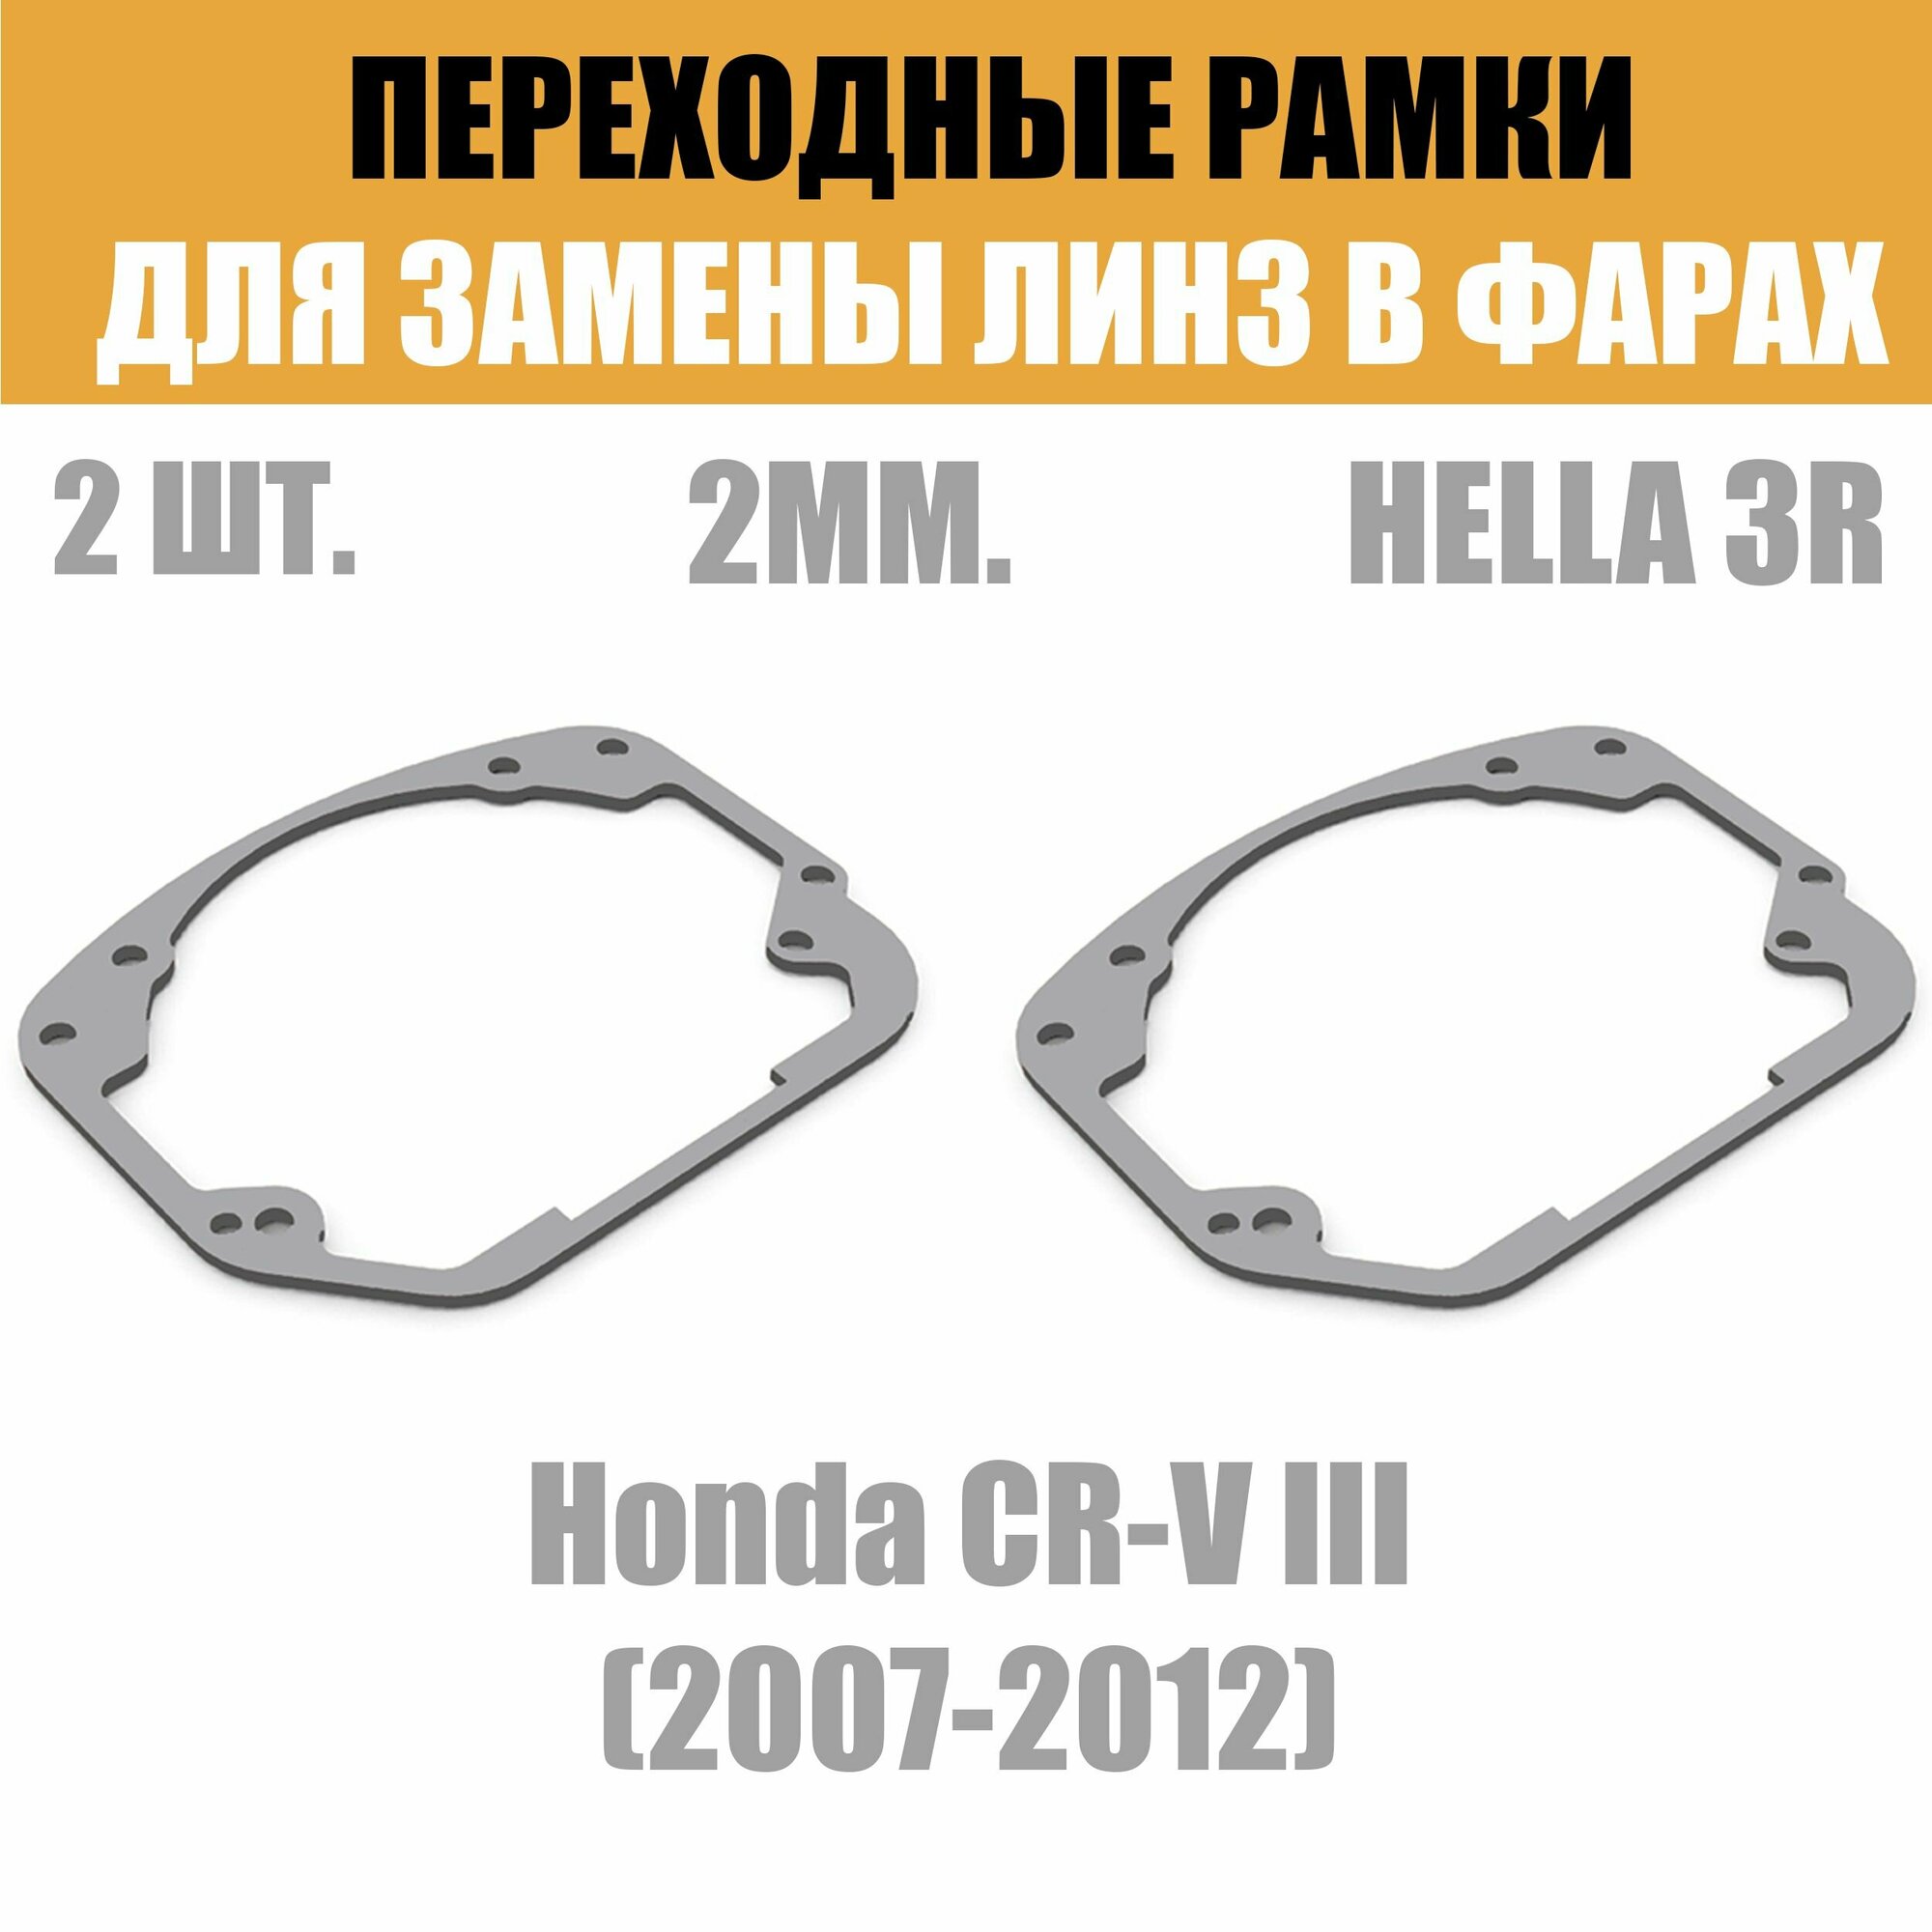 Переходные рамки для линз №24 на Honda CR-V III (2007-2012) под модуль Hella 3R/Hella 3 (Комплект 2шт)